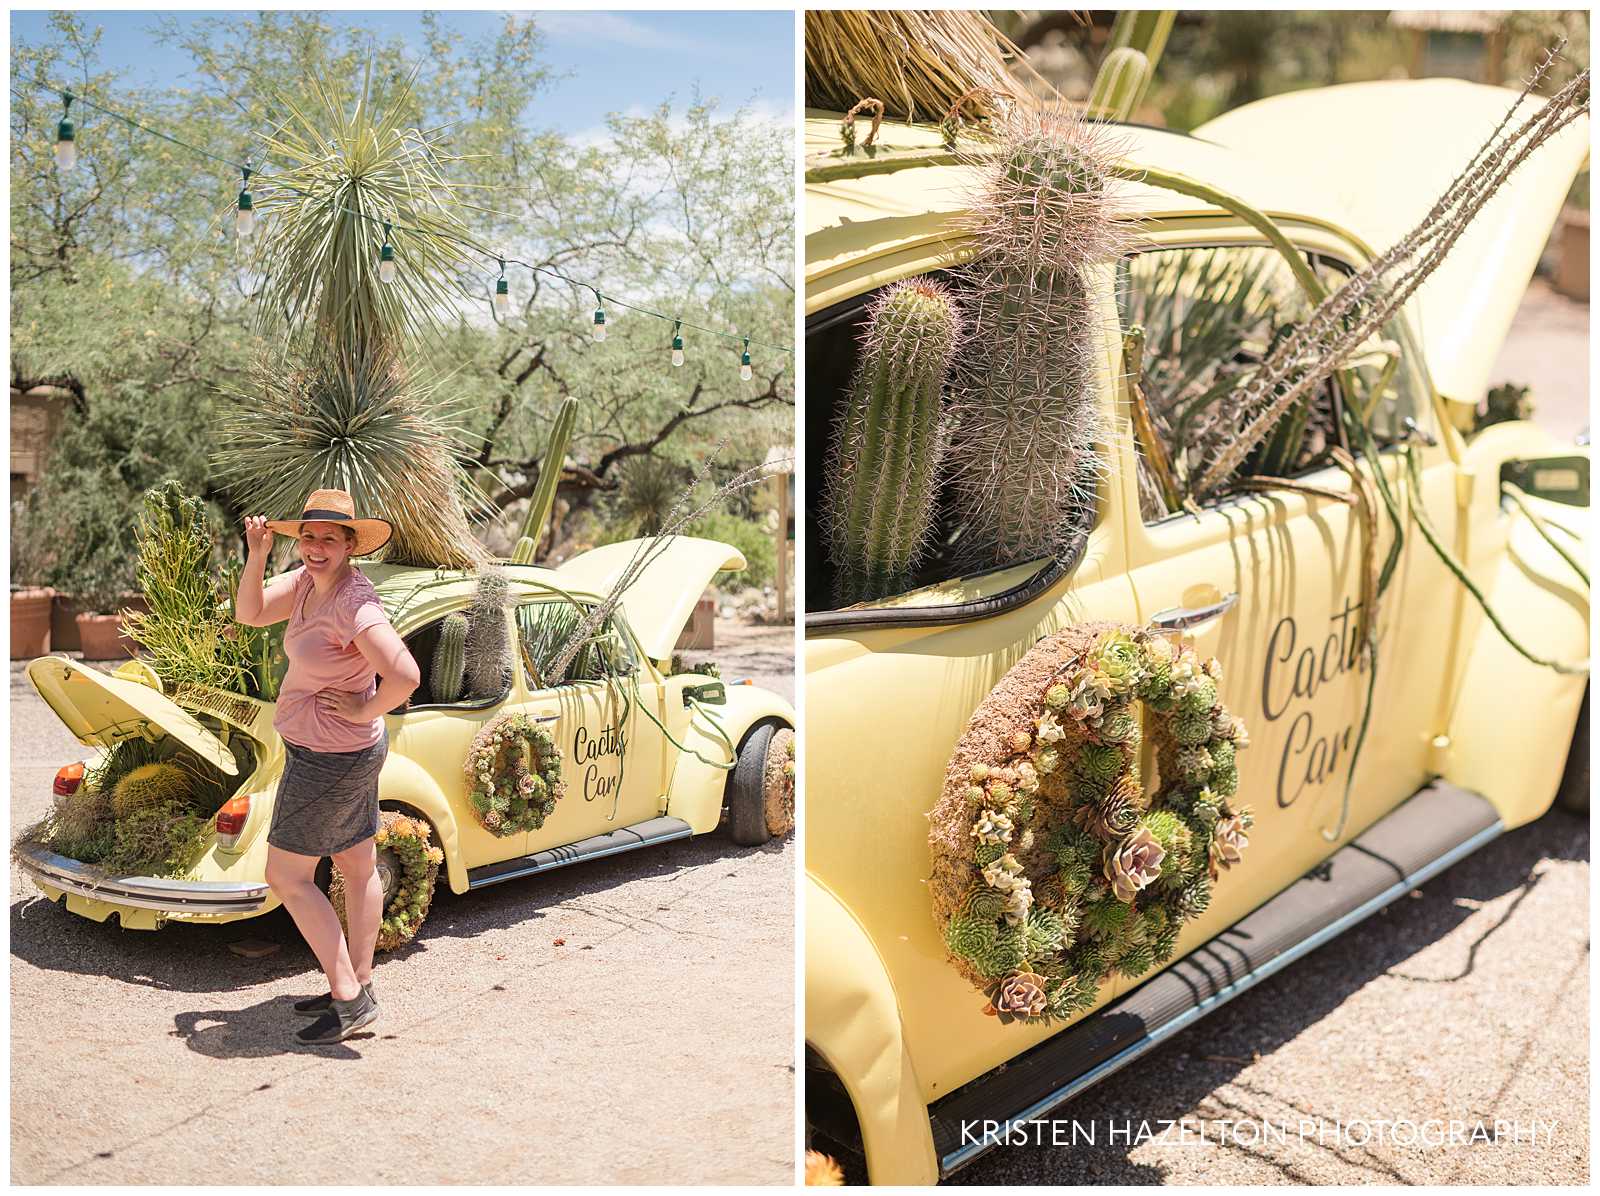 Woman in cowboy hat posing next to Tucson Botanical Garden's cactus car